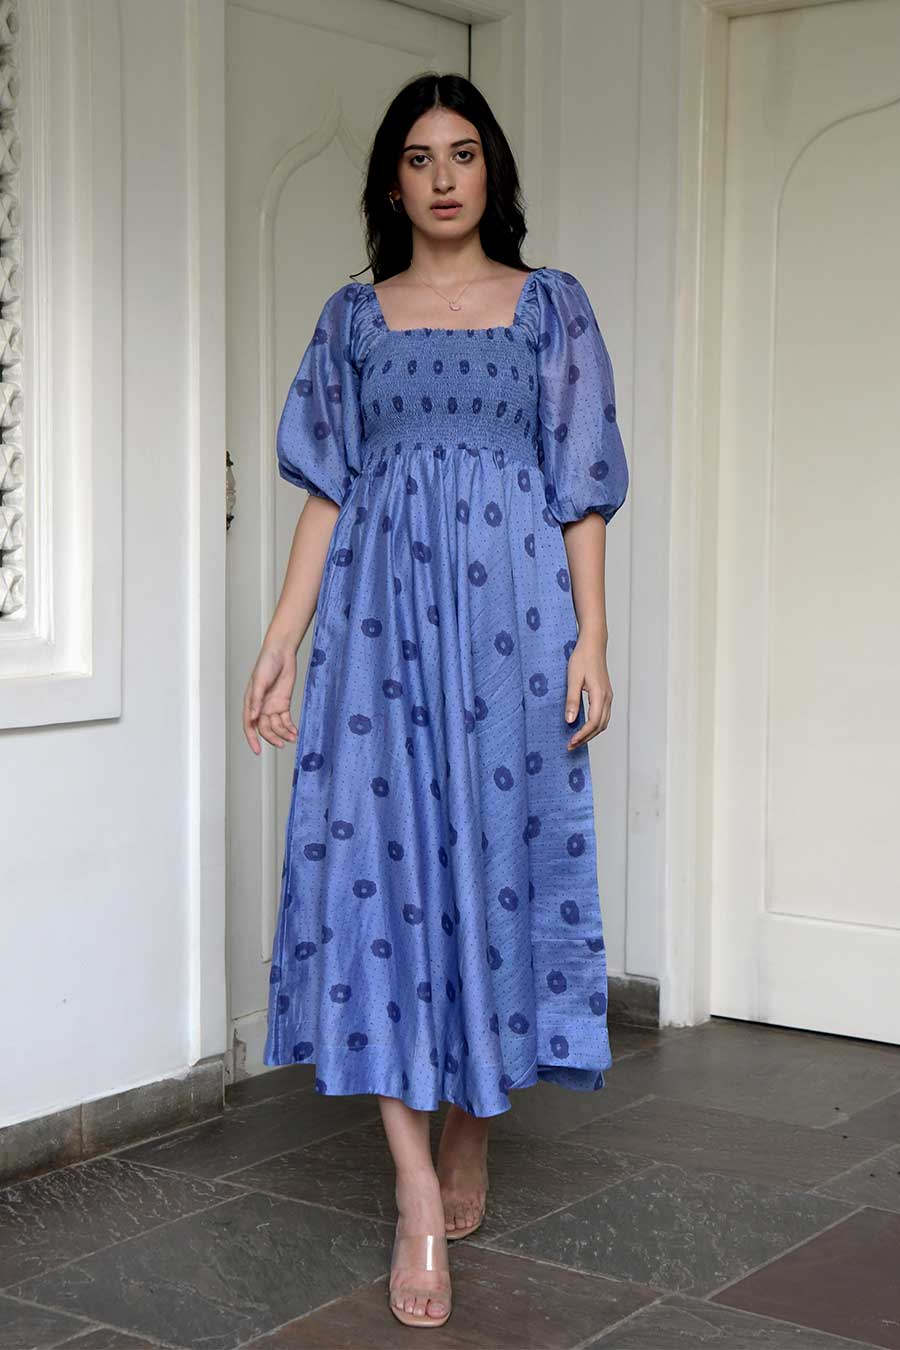 Cornflower Blue Handwoven Dress